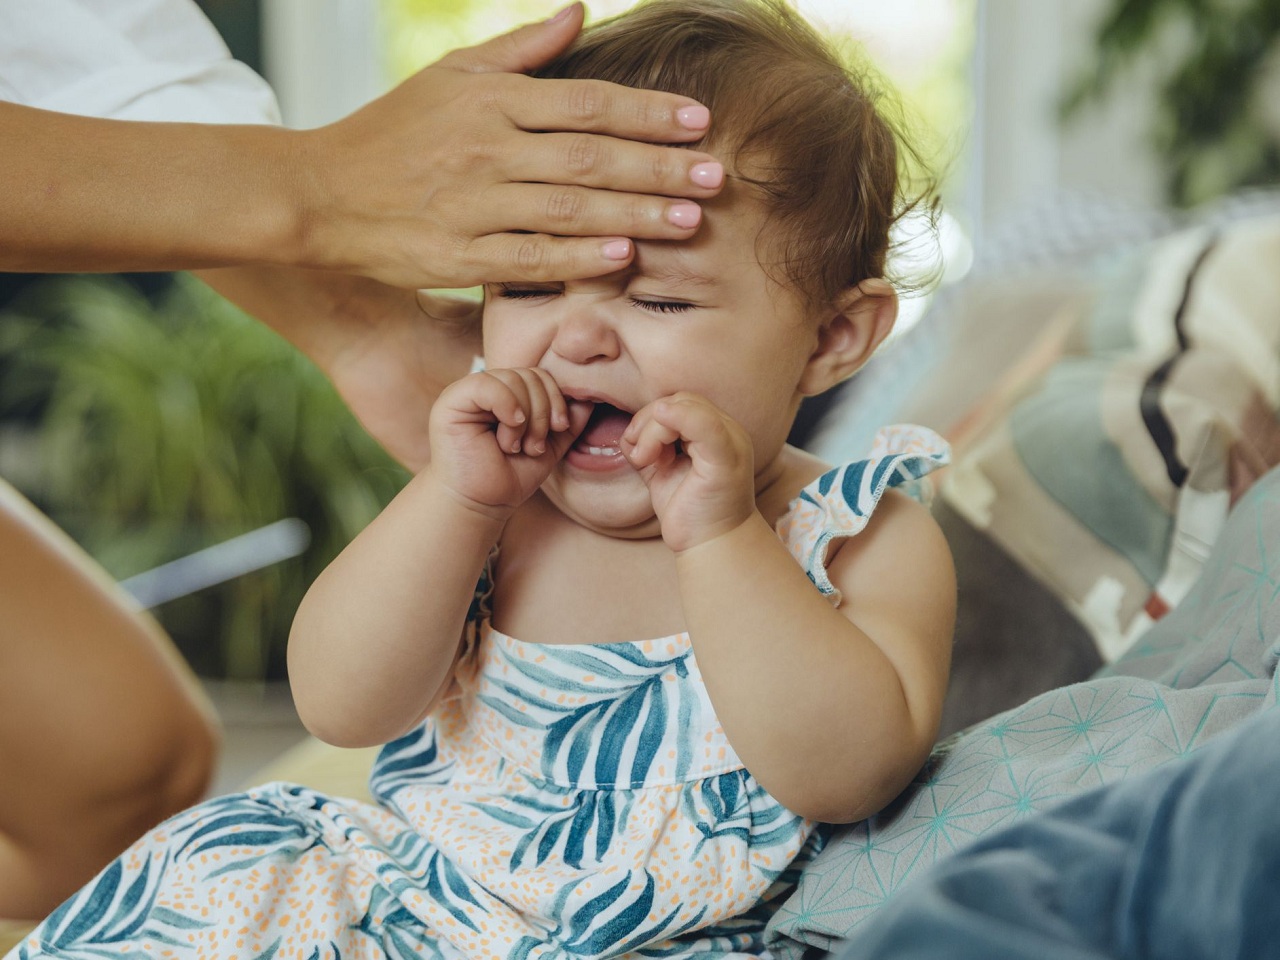 Làm thế nào để dỗ bé khi bé gặp khó khăn trong việc ngủ do mọc răng?
